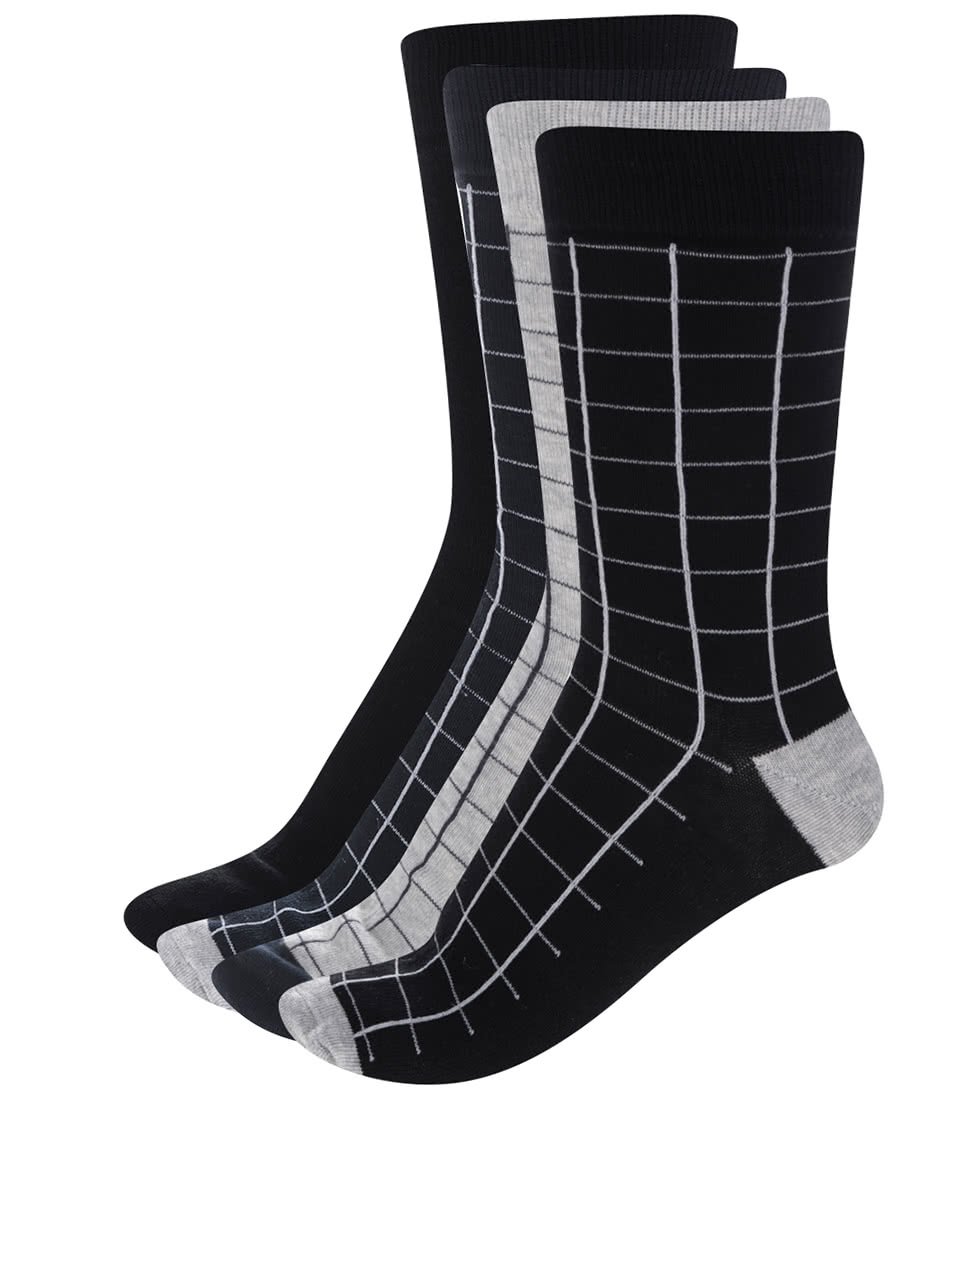 Sada čtyř párů ponožek v černé, šedé a modré barvě ONLY & SONS Niels